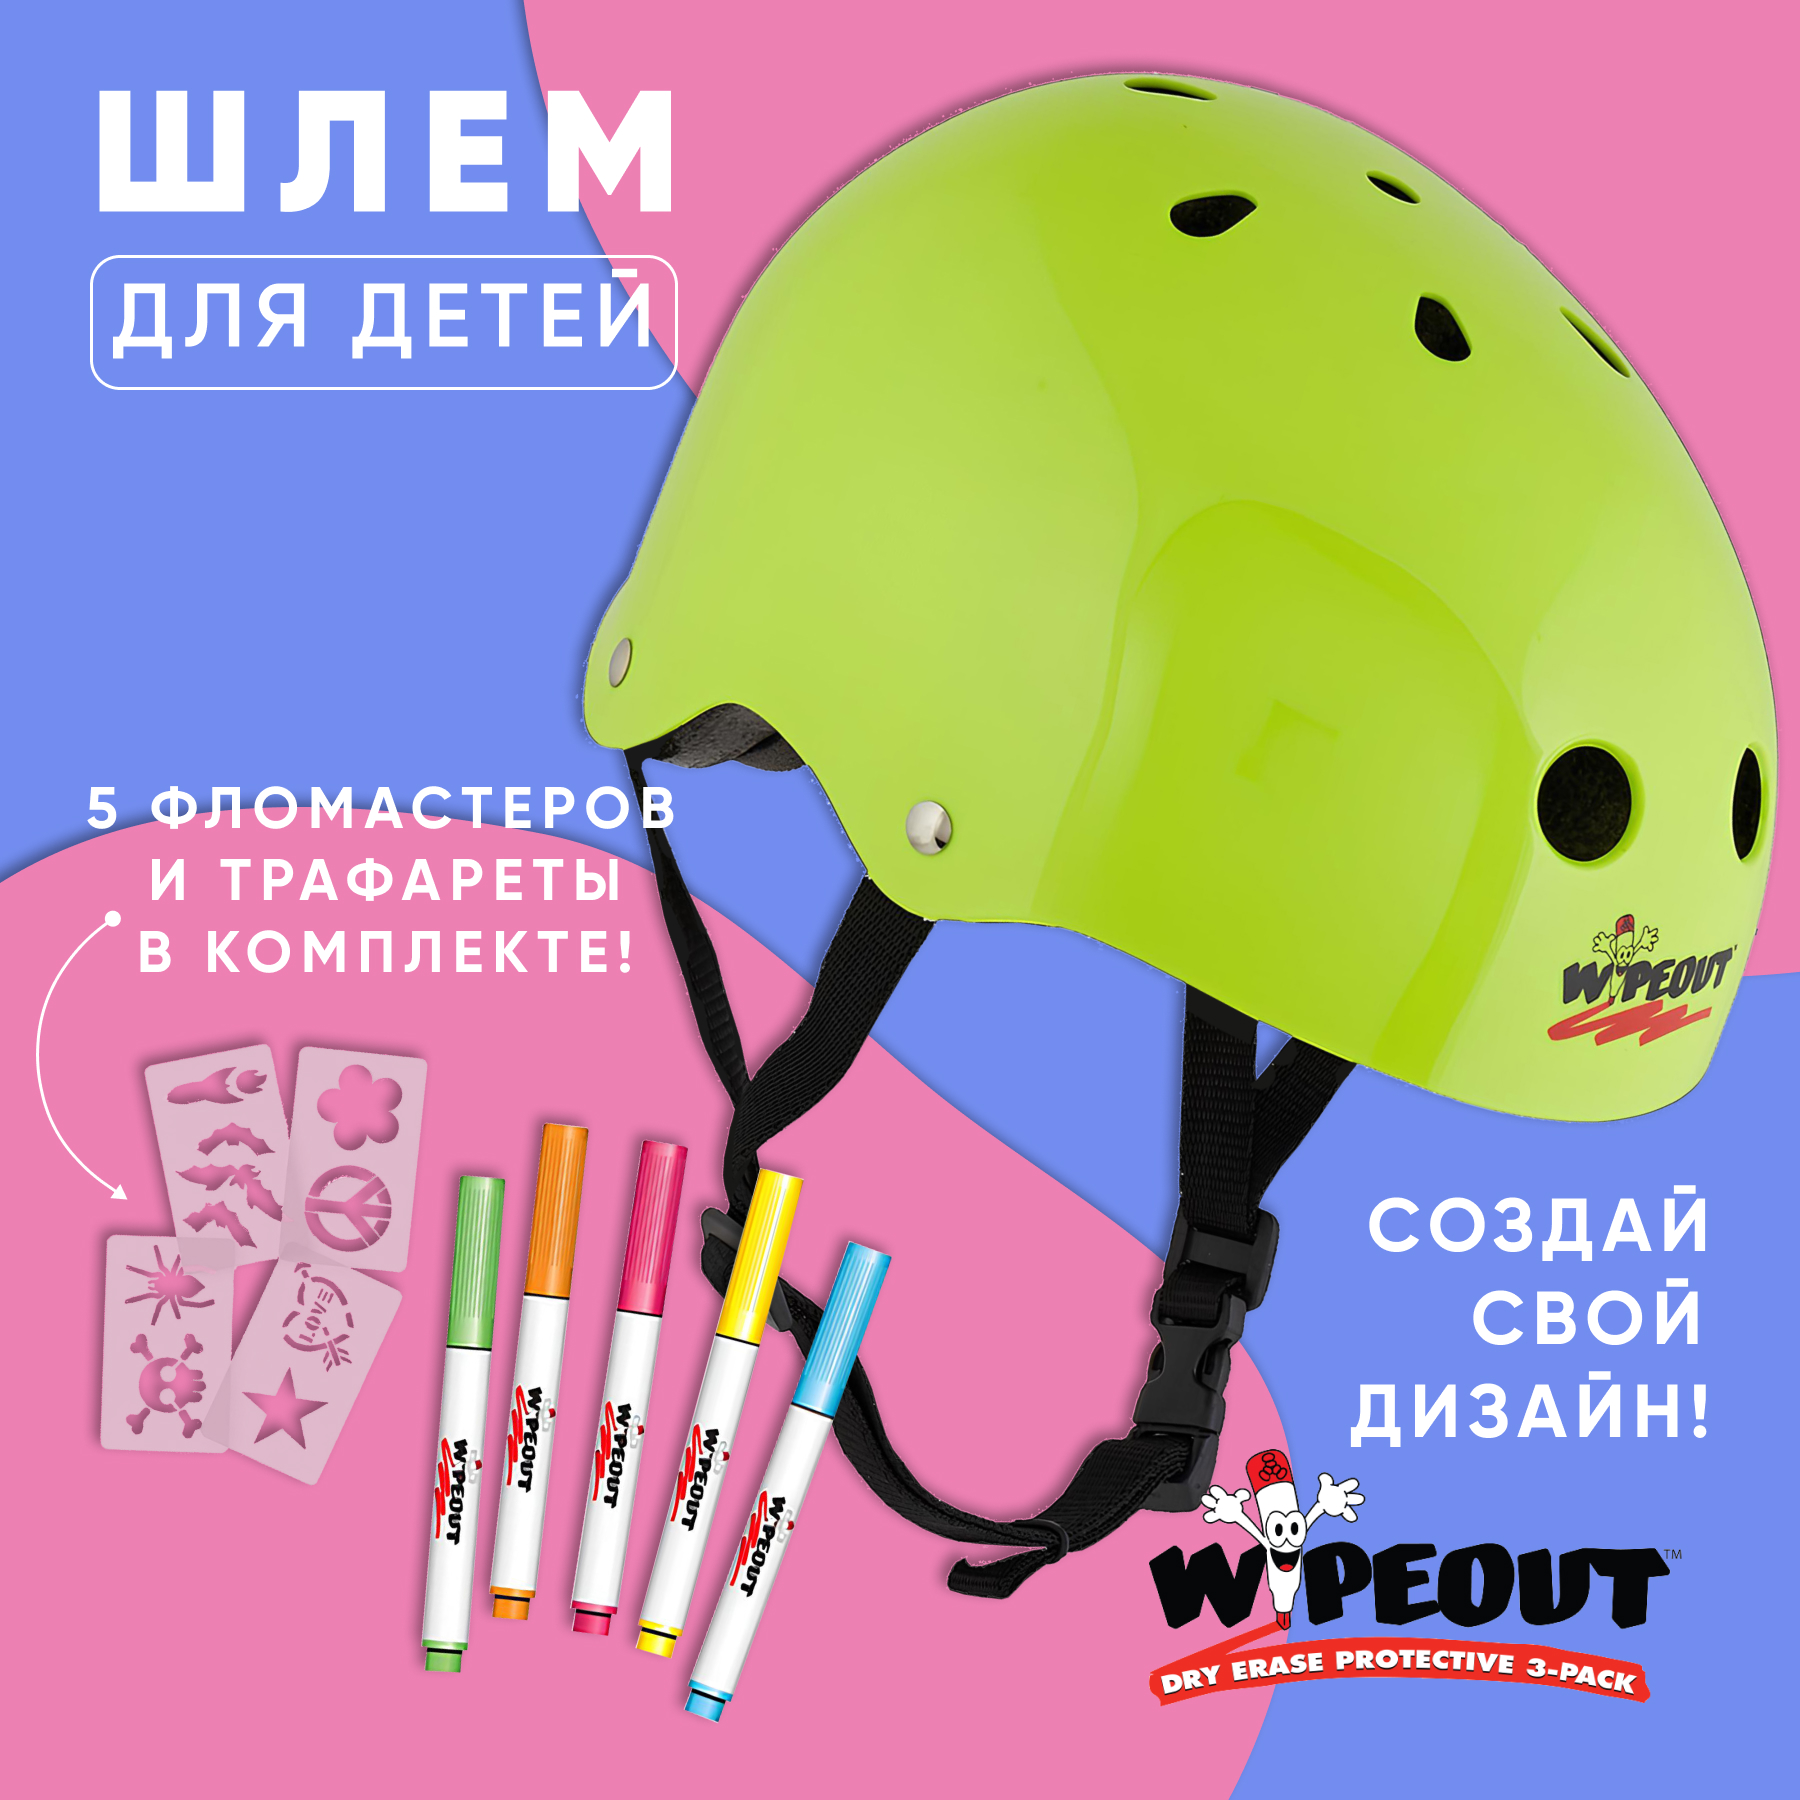 Шлем защитный спортивный WIPEOUT Neon Zest с фломастерами и трафаретами размер M 5+ обхват головы 49-52 см - фото 2